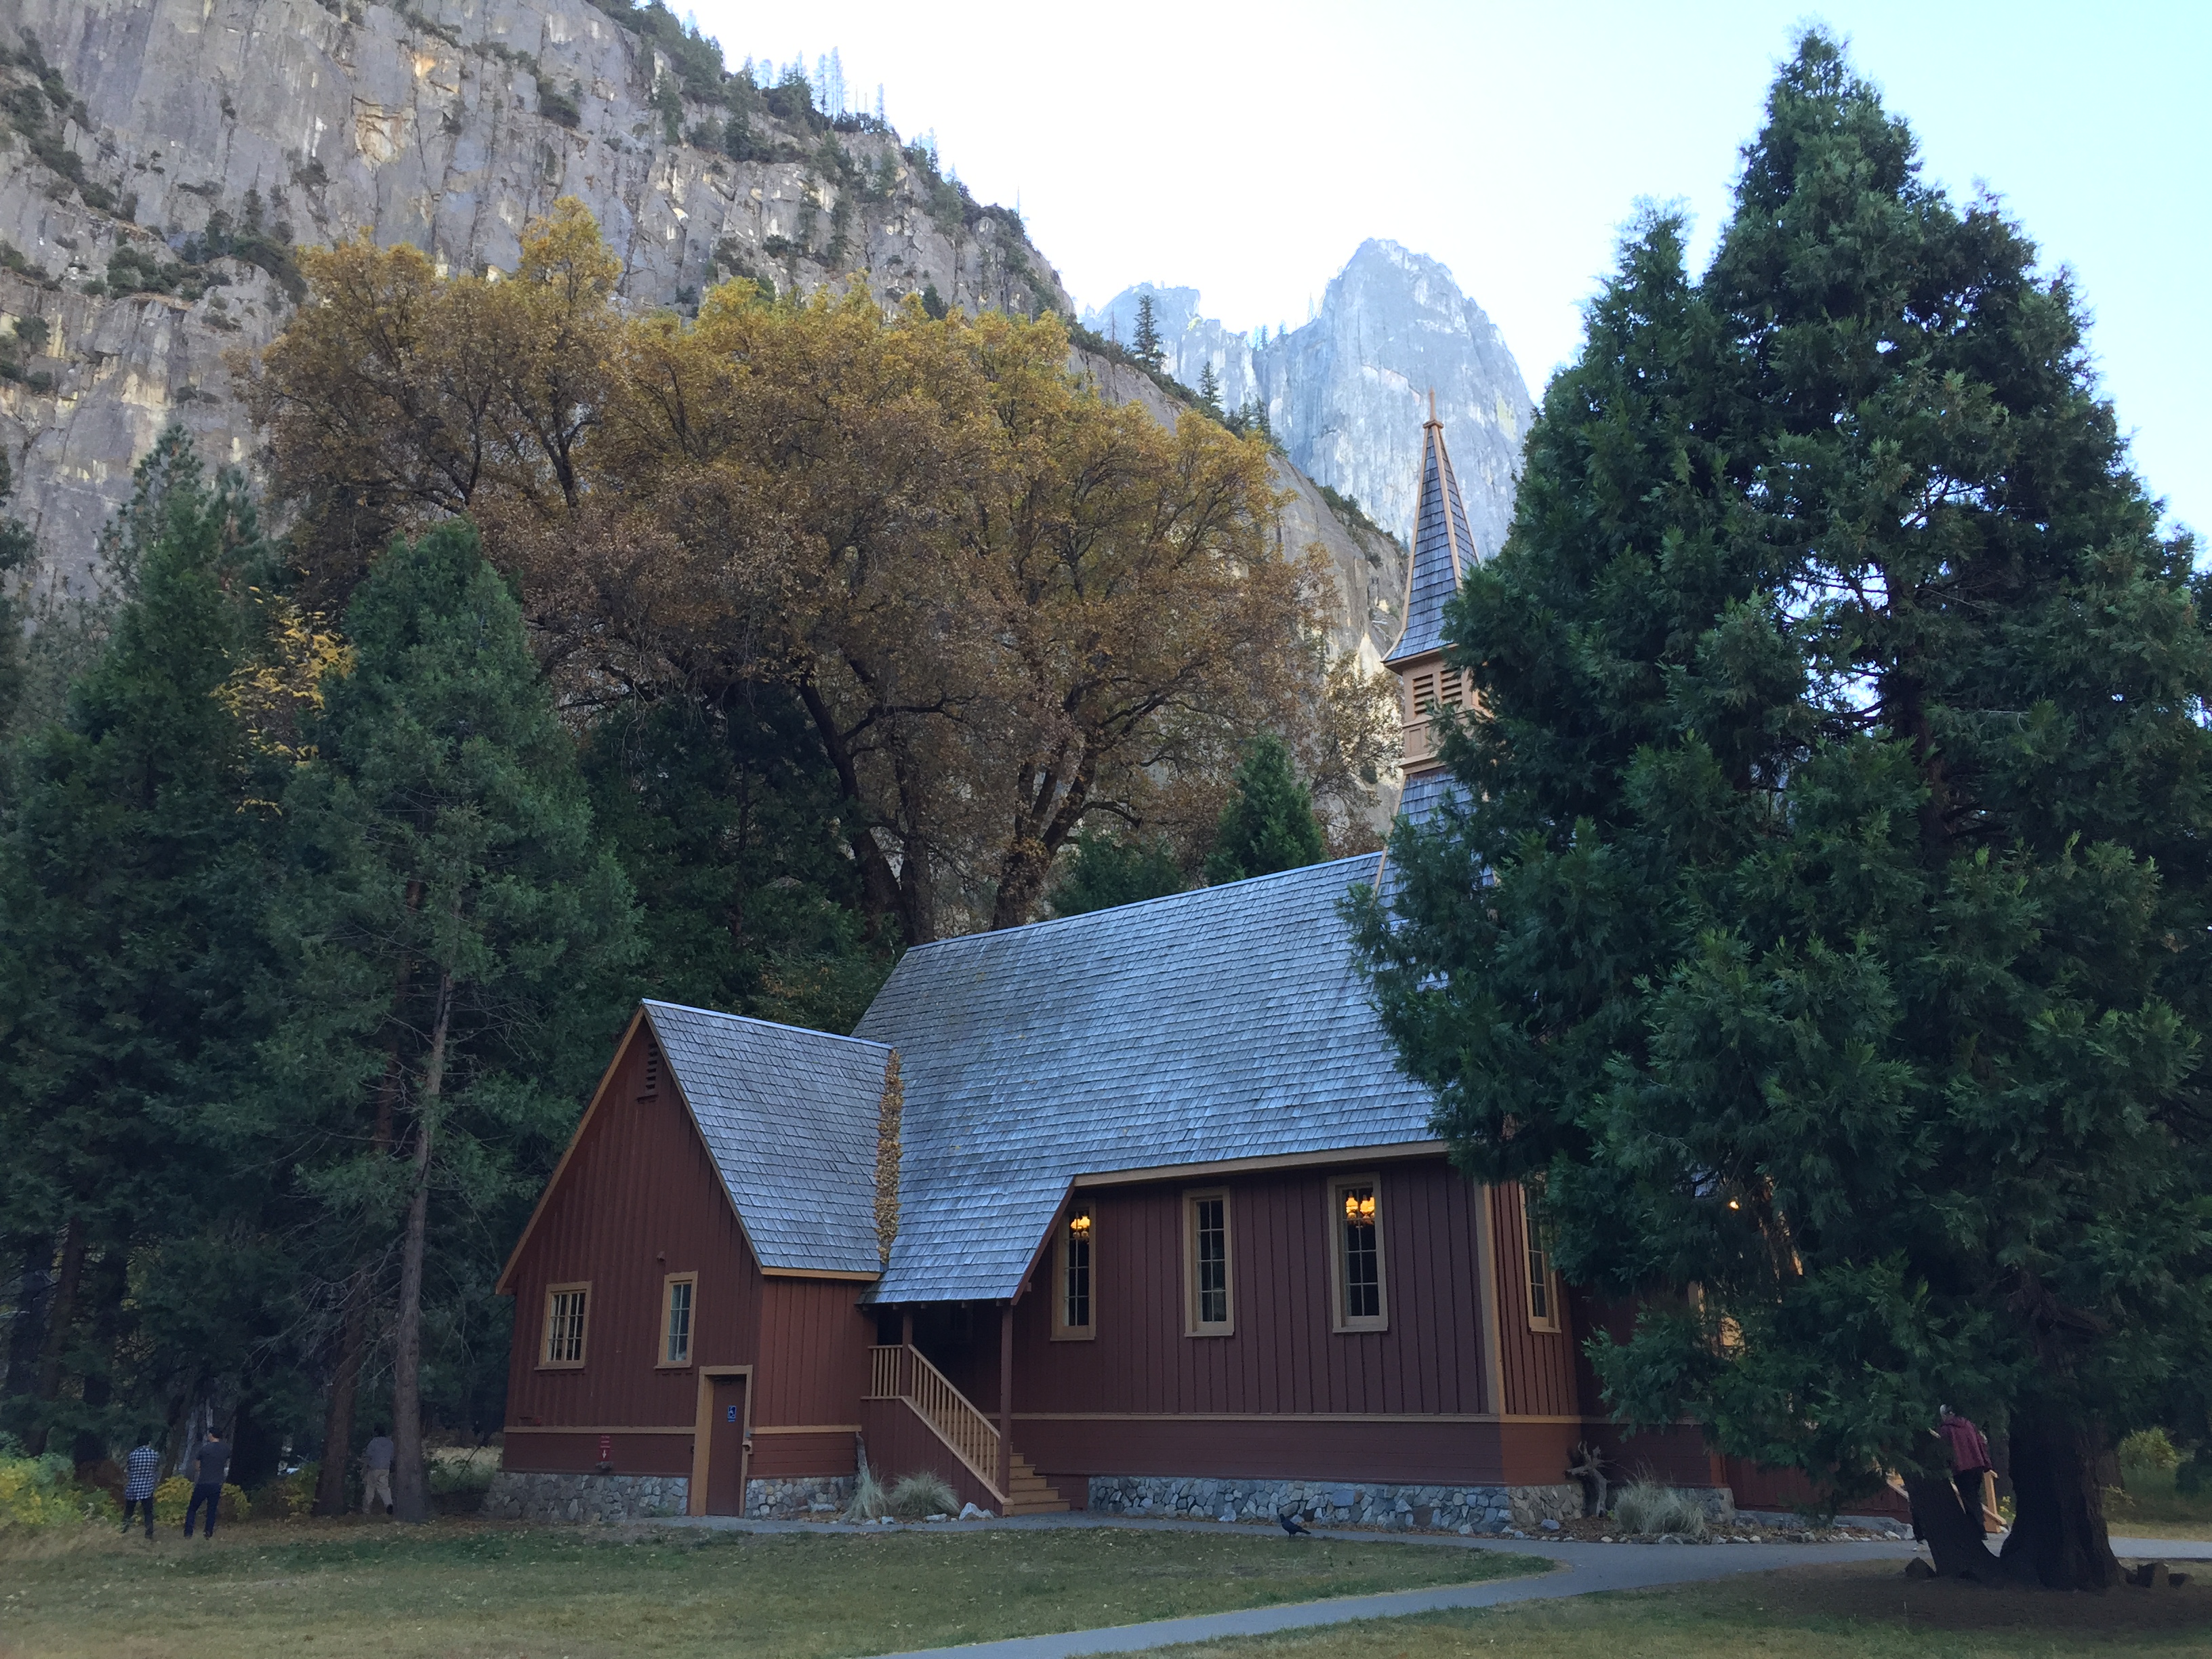 Yosemite in fall